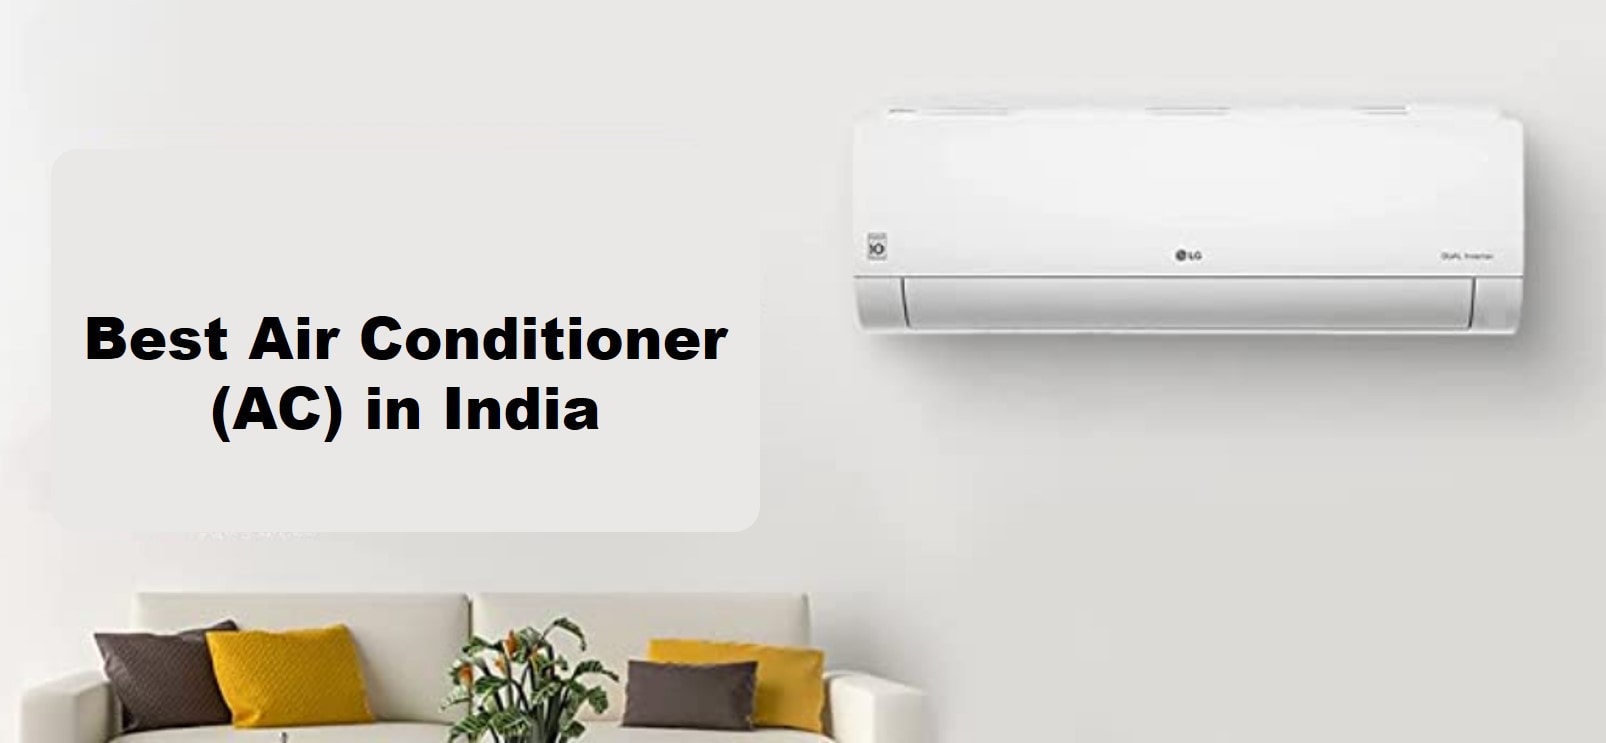 Best Air Conditioner (AC) in India